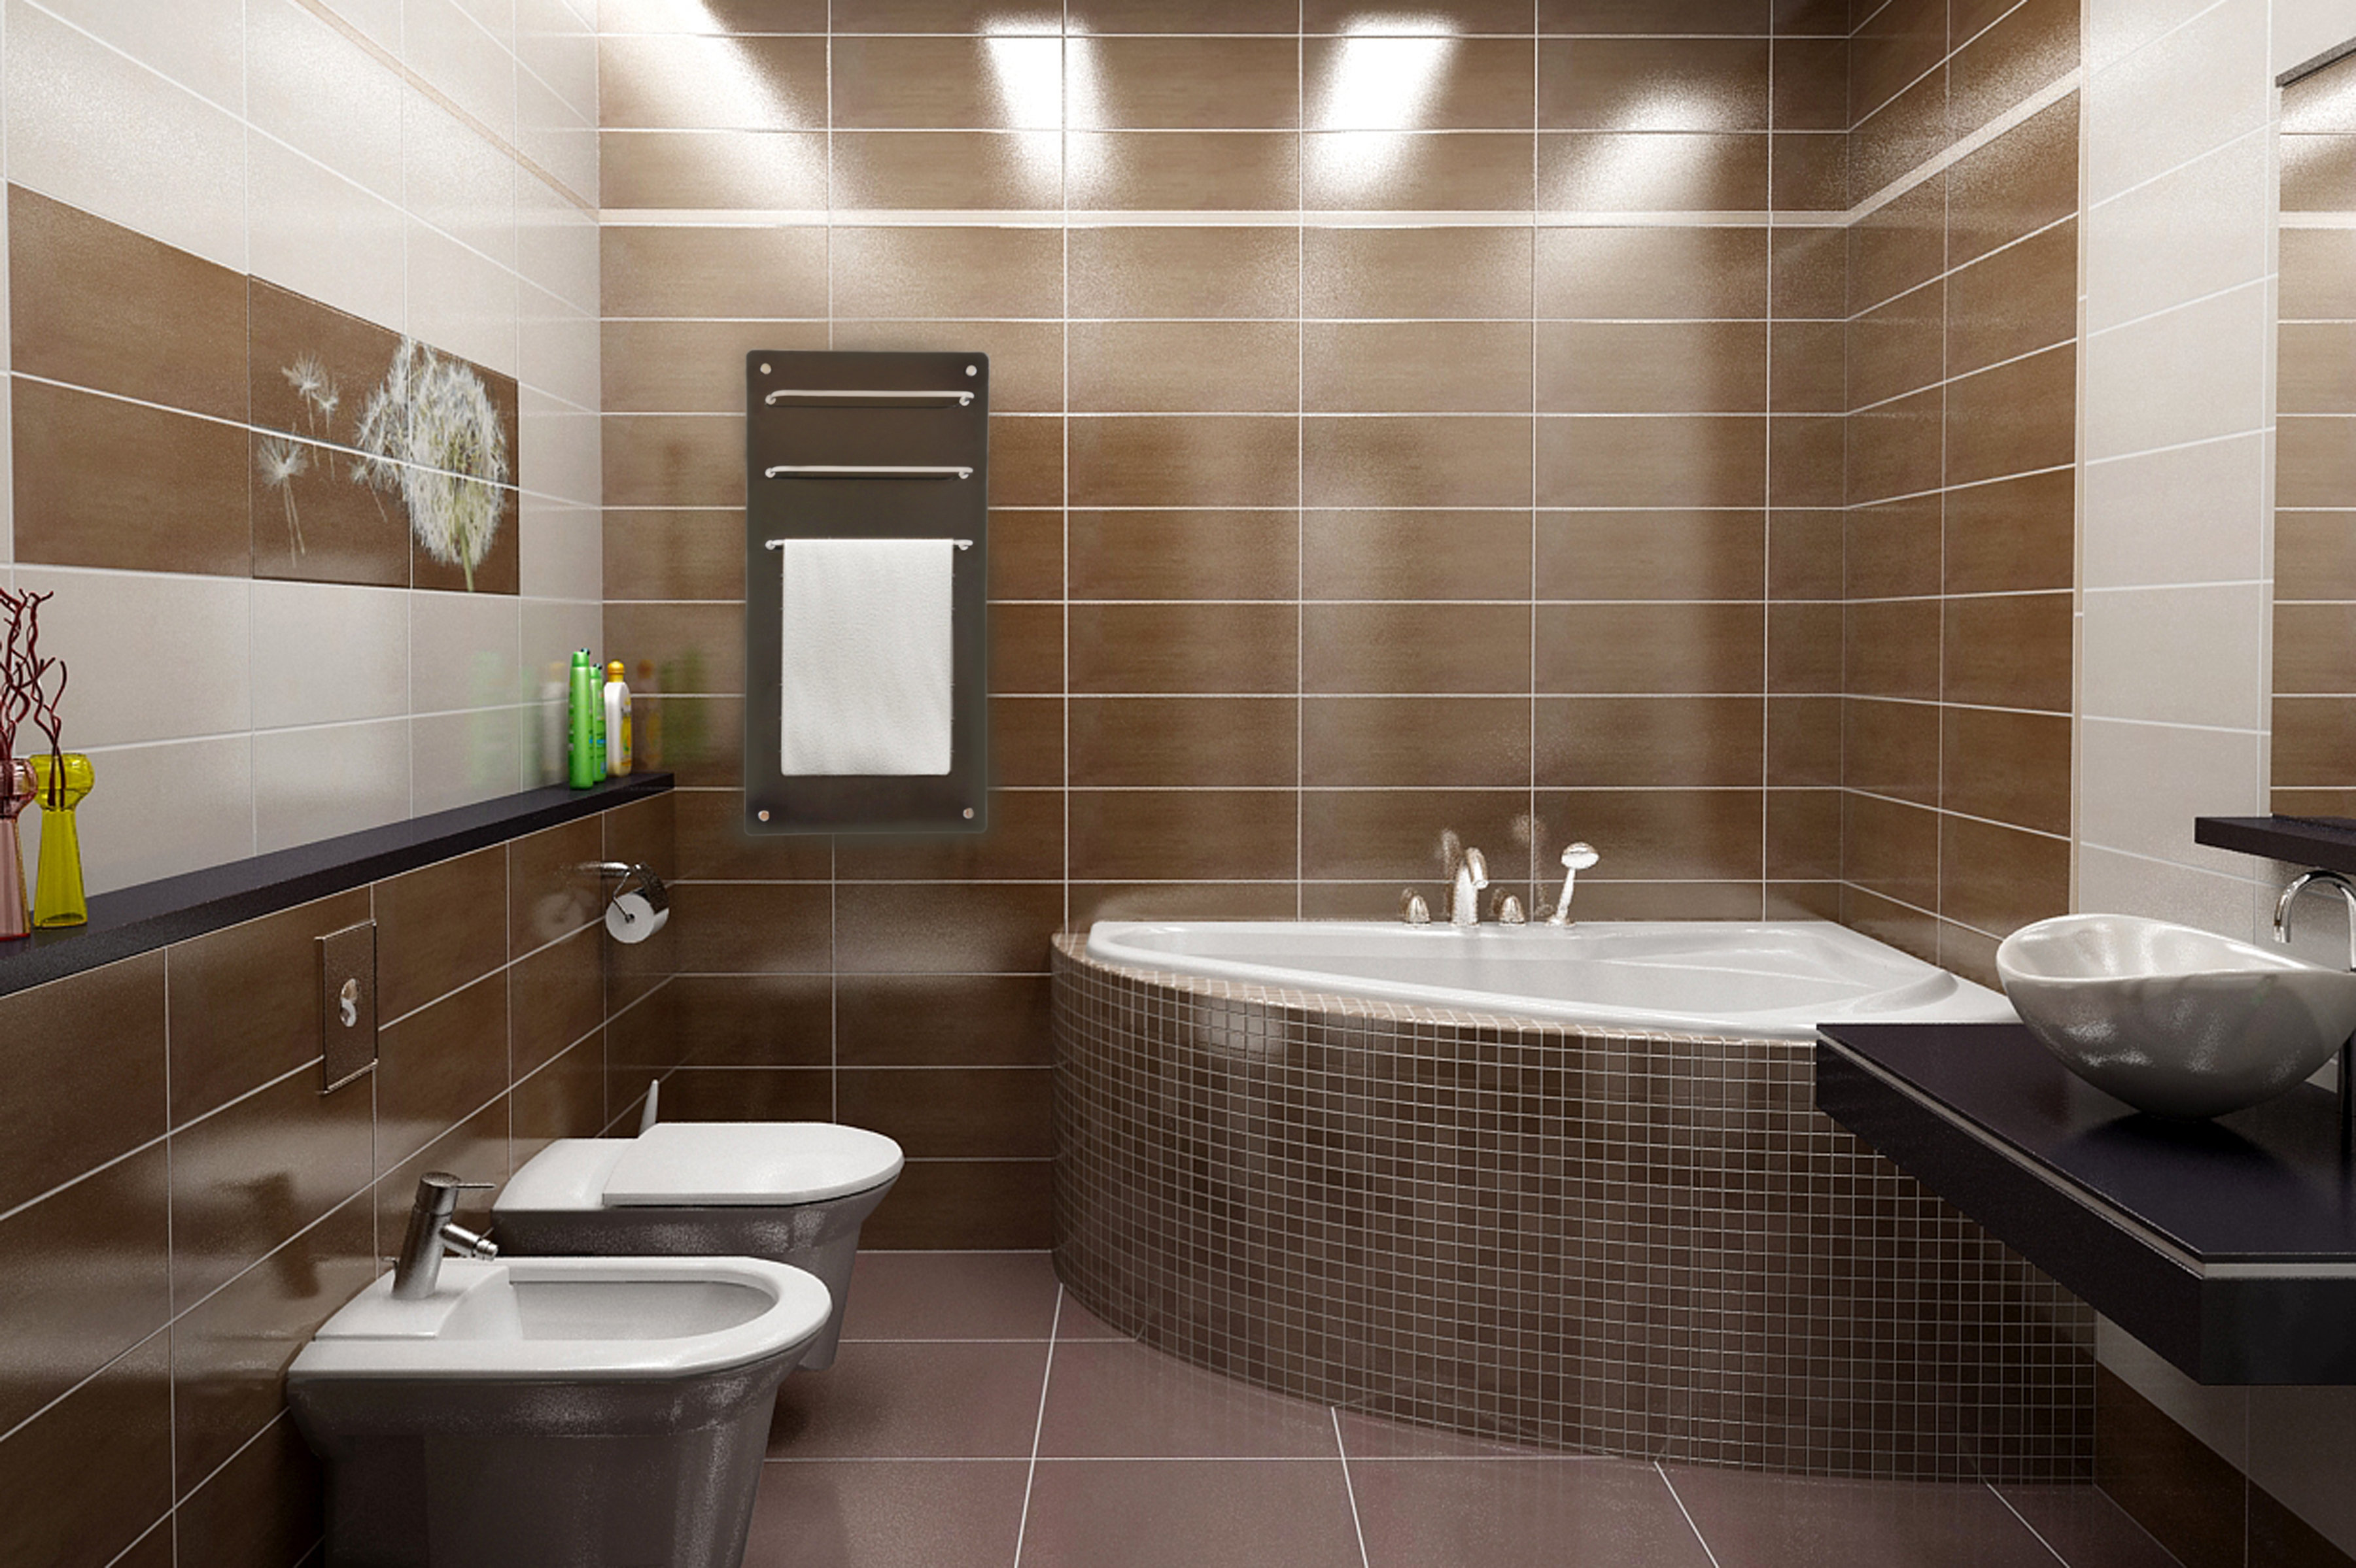 Дизайн маленьких ванных комнат картинки » Картинки и фотографии дизайна .